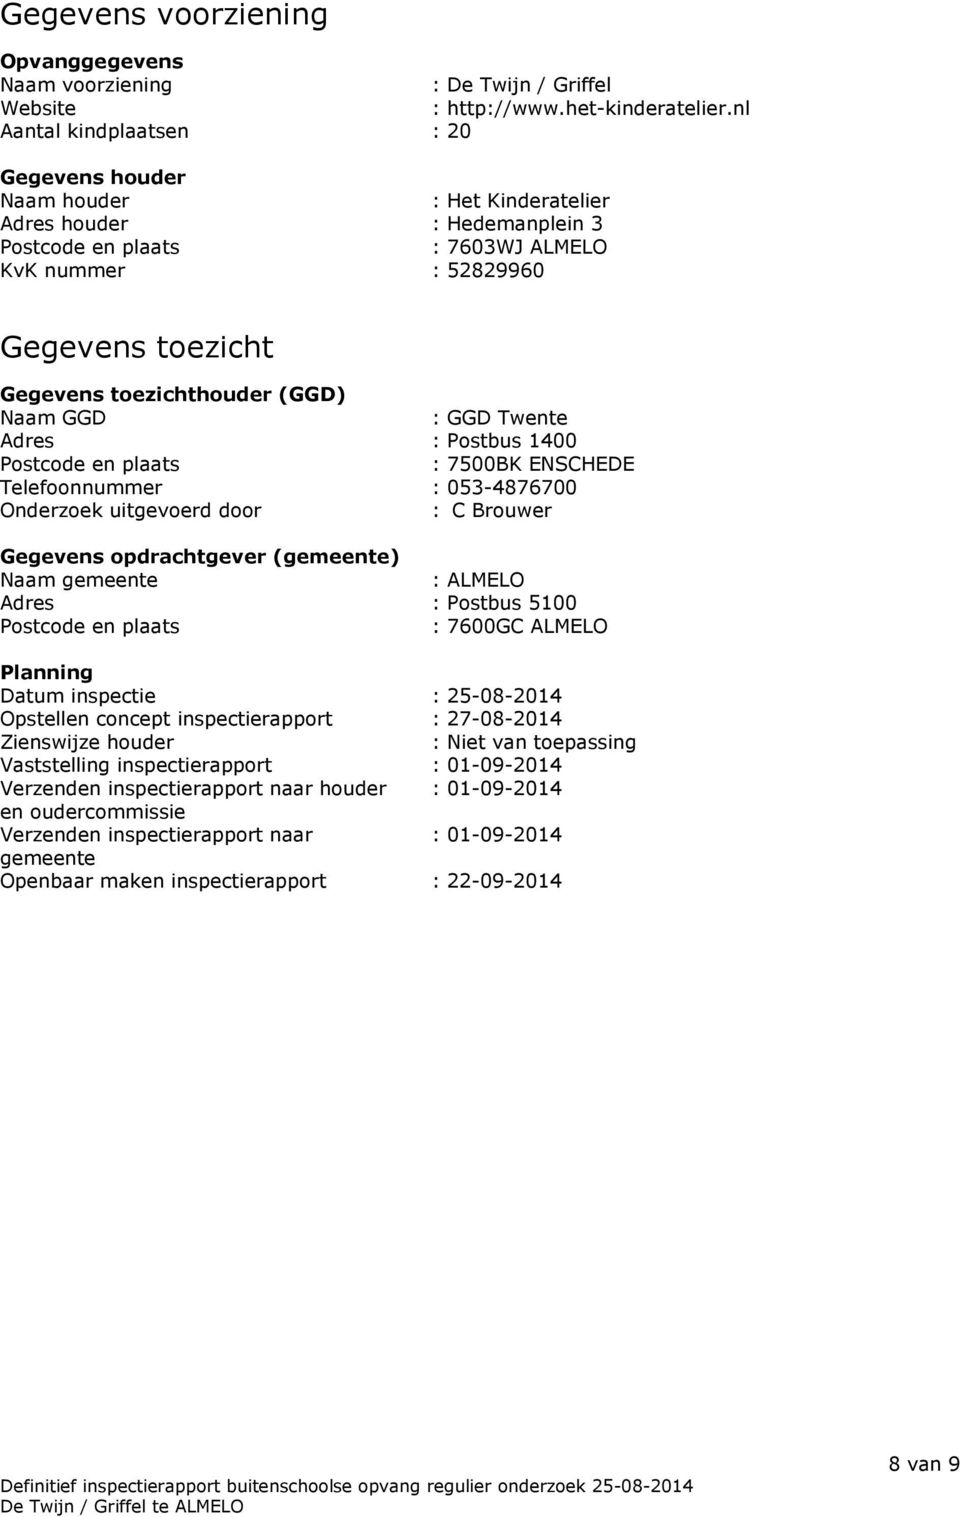 toezichthouder (GGD) Naam GGD : GGD Twente Adres : Postbus 1400 Postcode en plaats : 7500BK ENSCHEDE Telefoonnummer : 053-4876700 Onderzoek uitgevoerd door : C Brouwer Gegevens opdrachtgever